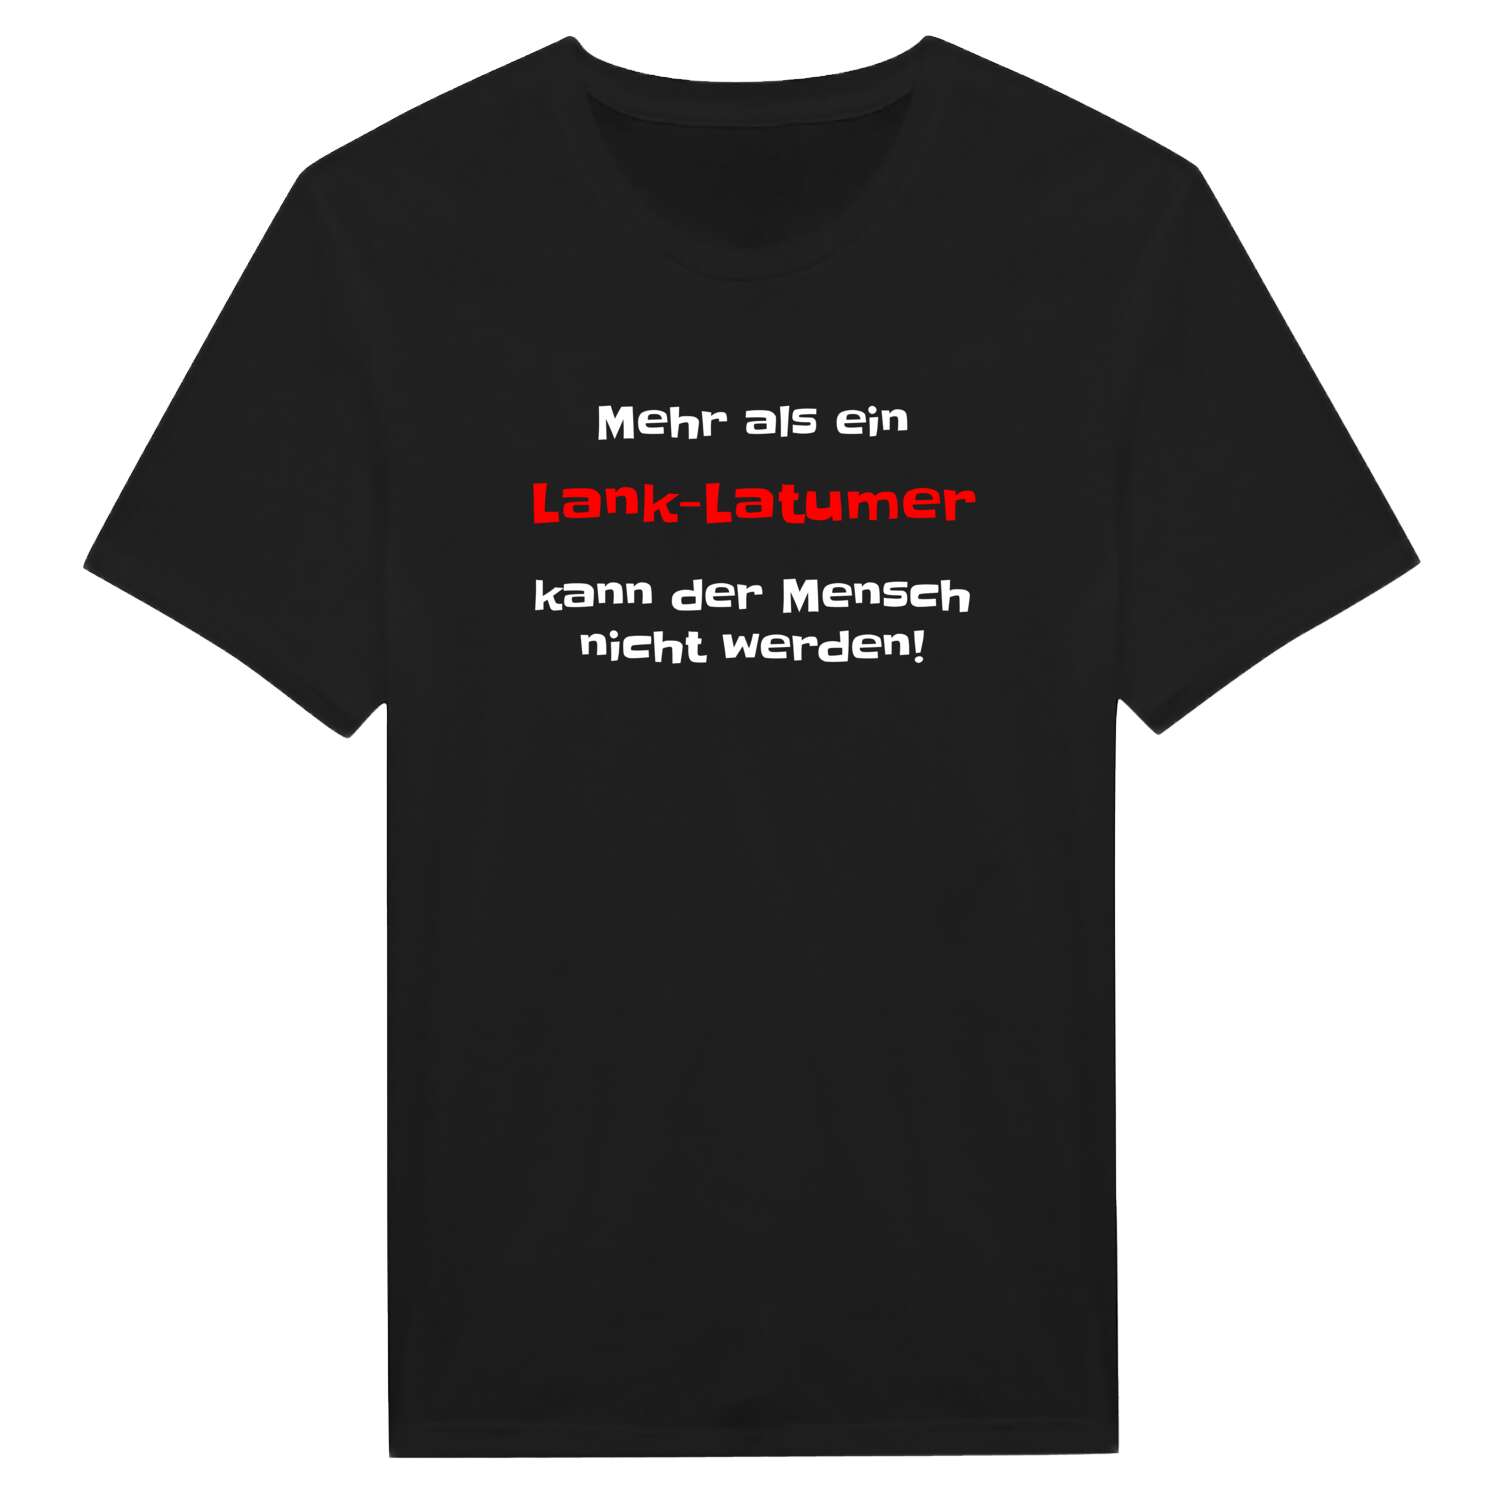 Lank-Latum T-Shirt »Mehr als ein«